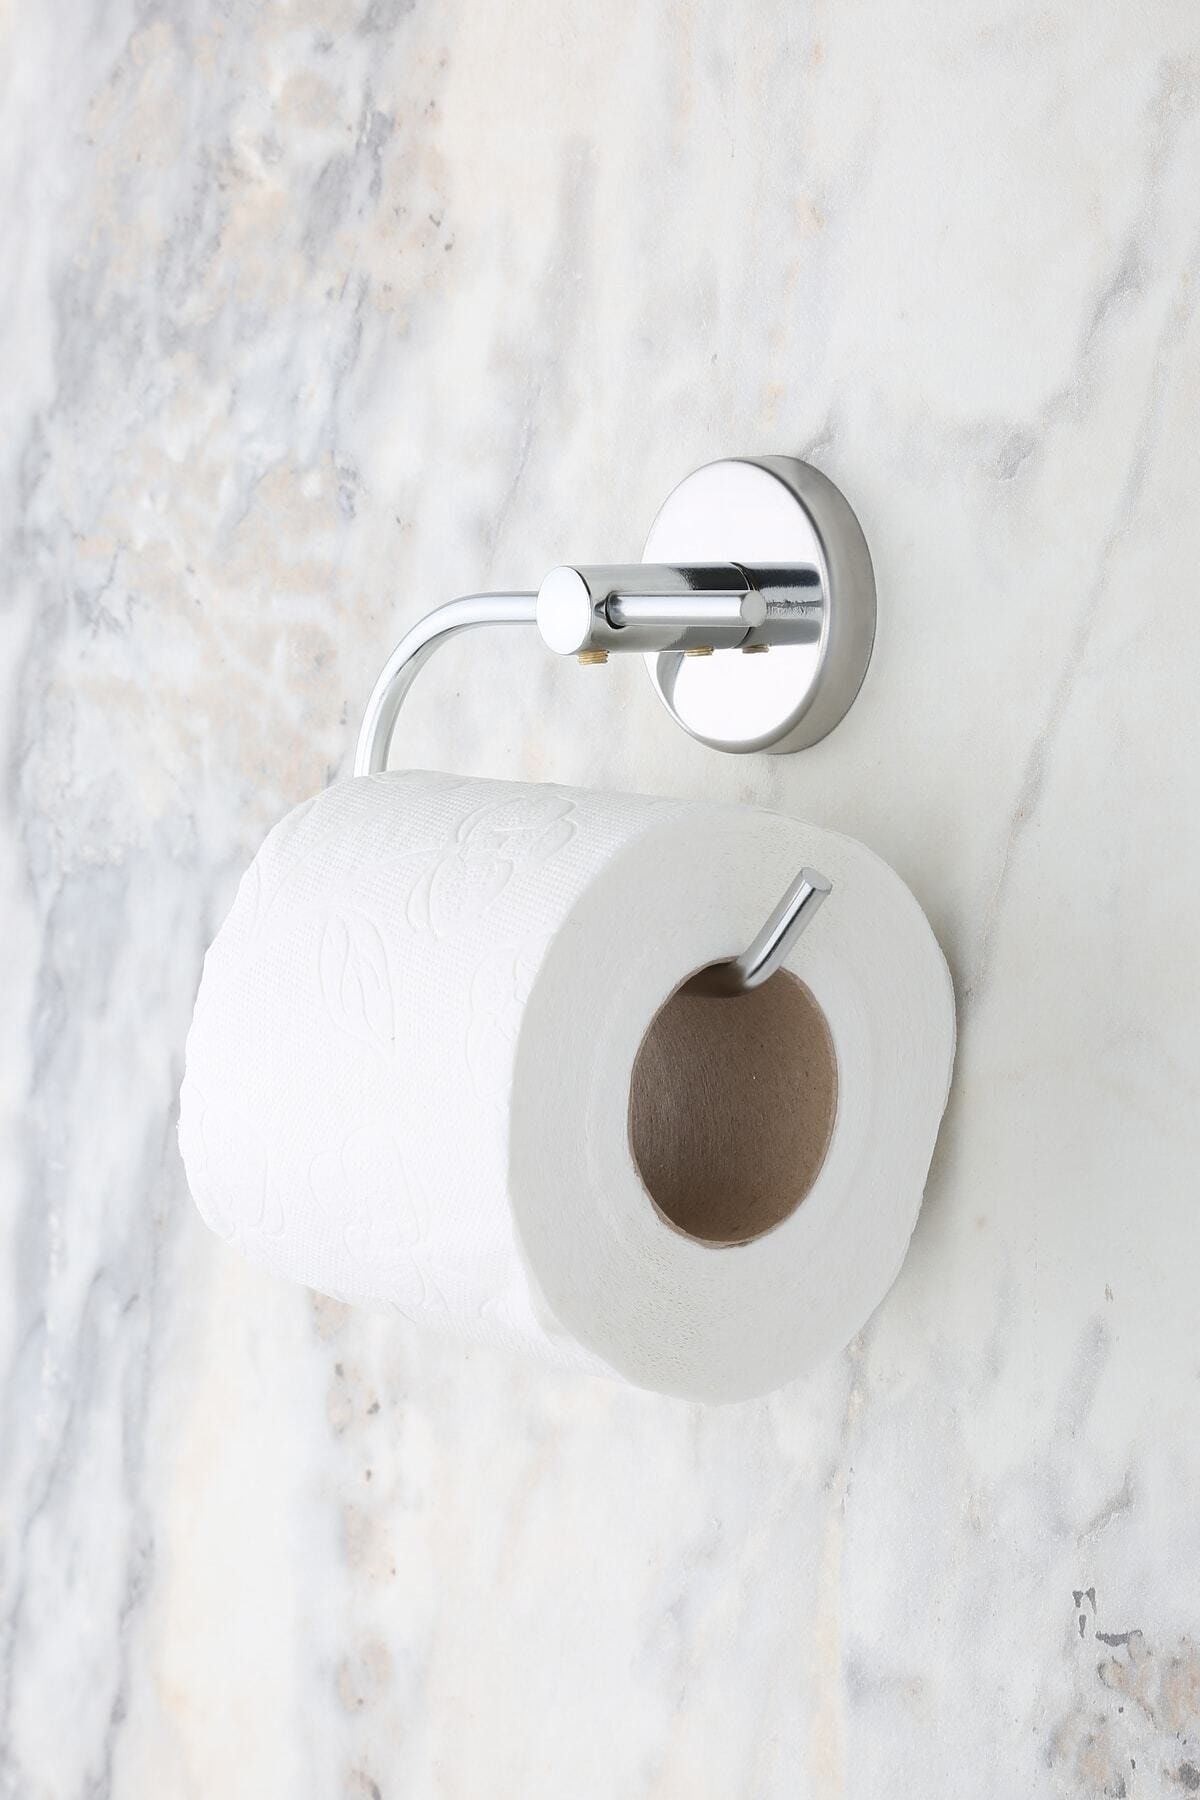 MultiStore Krom Açık Tuvalet Kağıtlığı Wc Kağıtlık Tuvalet Kağıdı Askısı